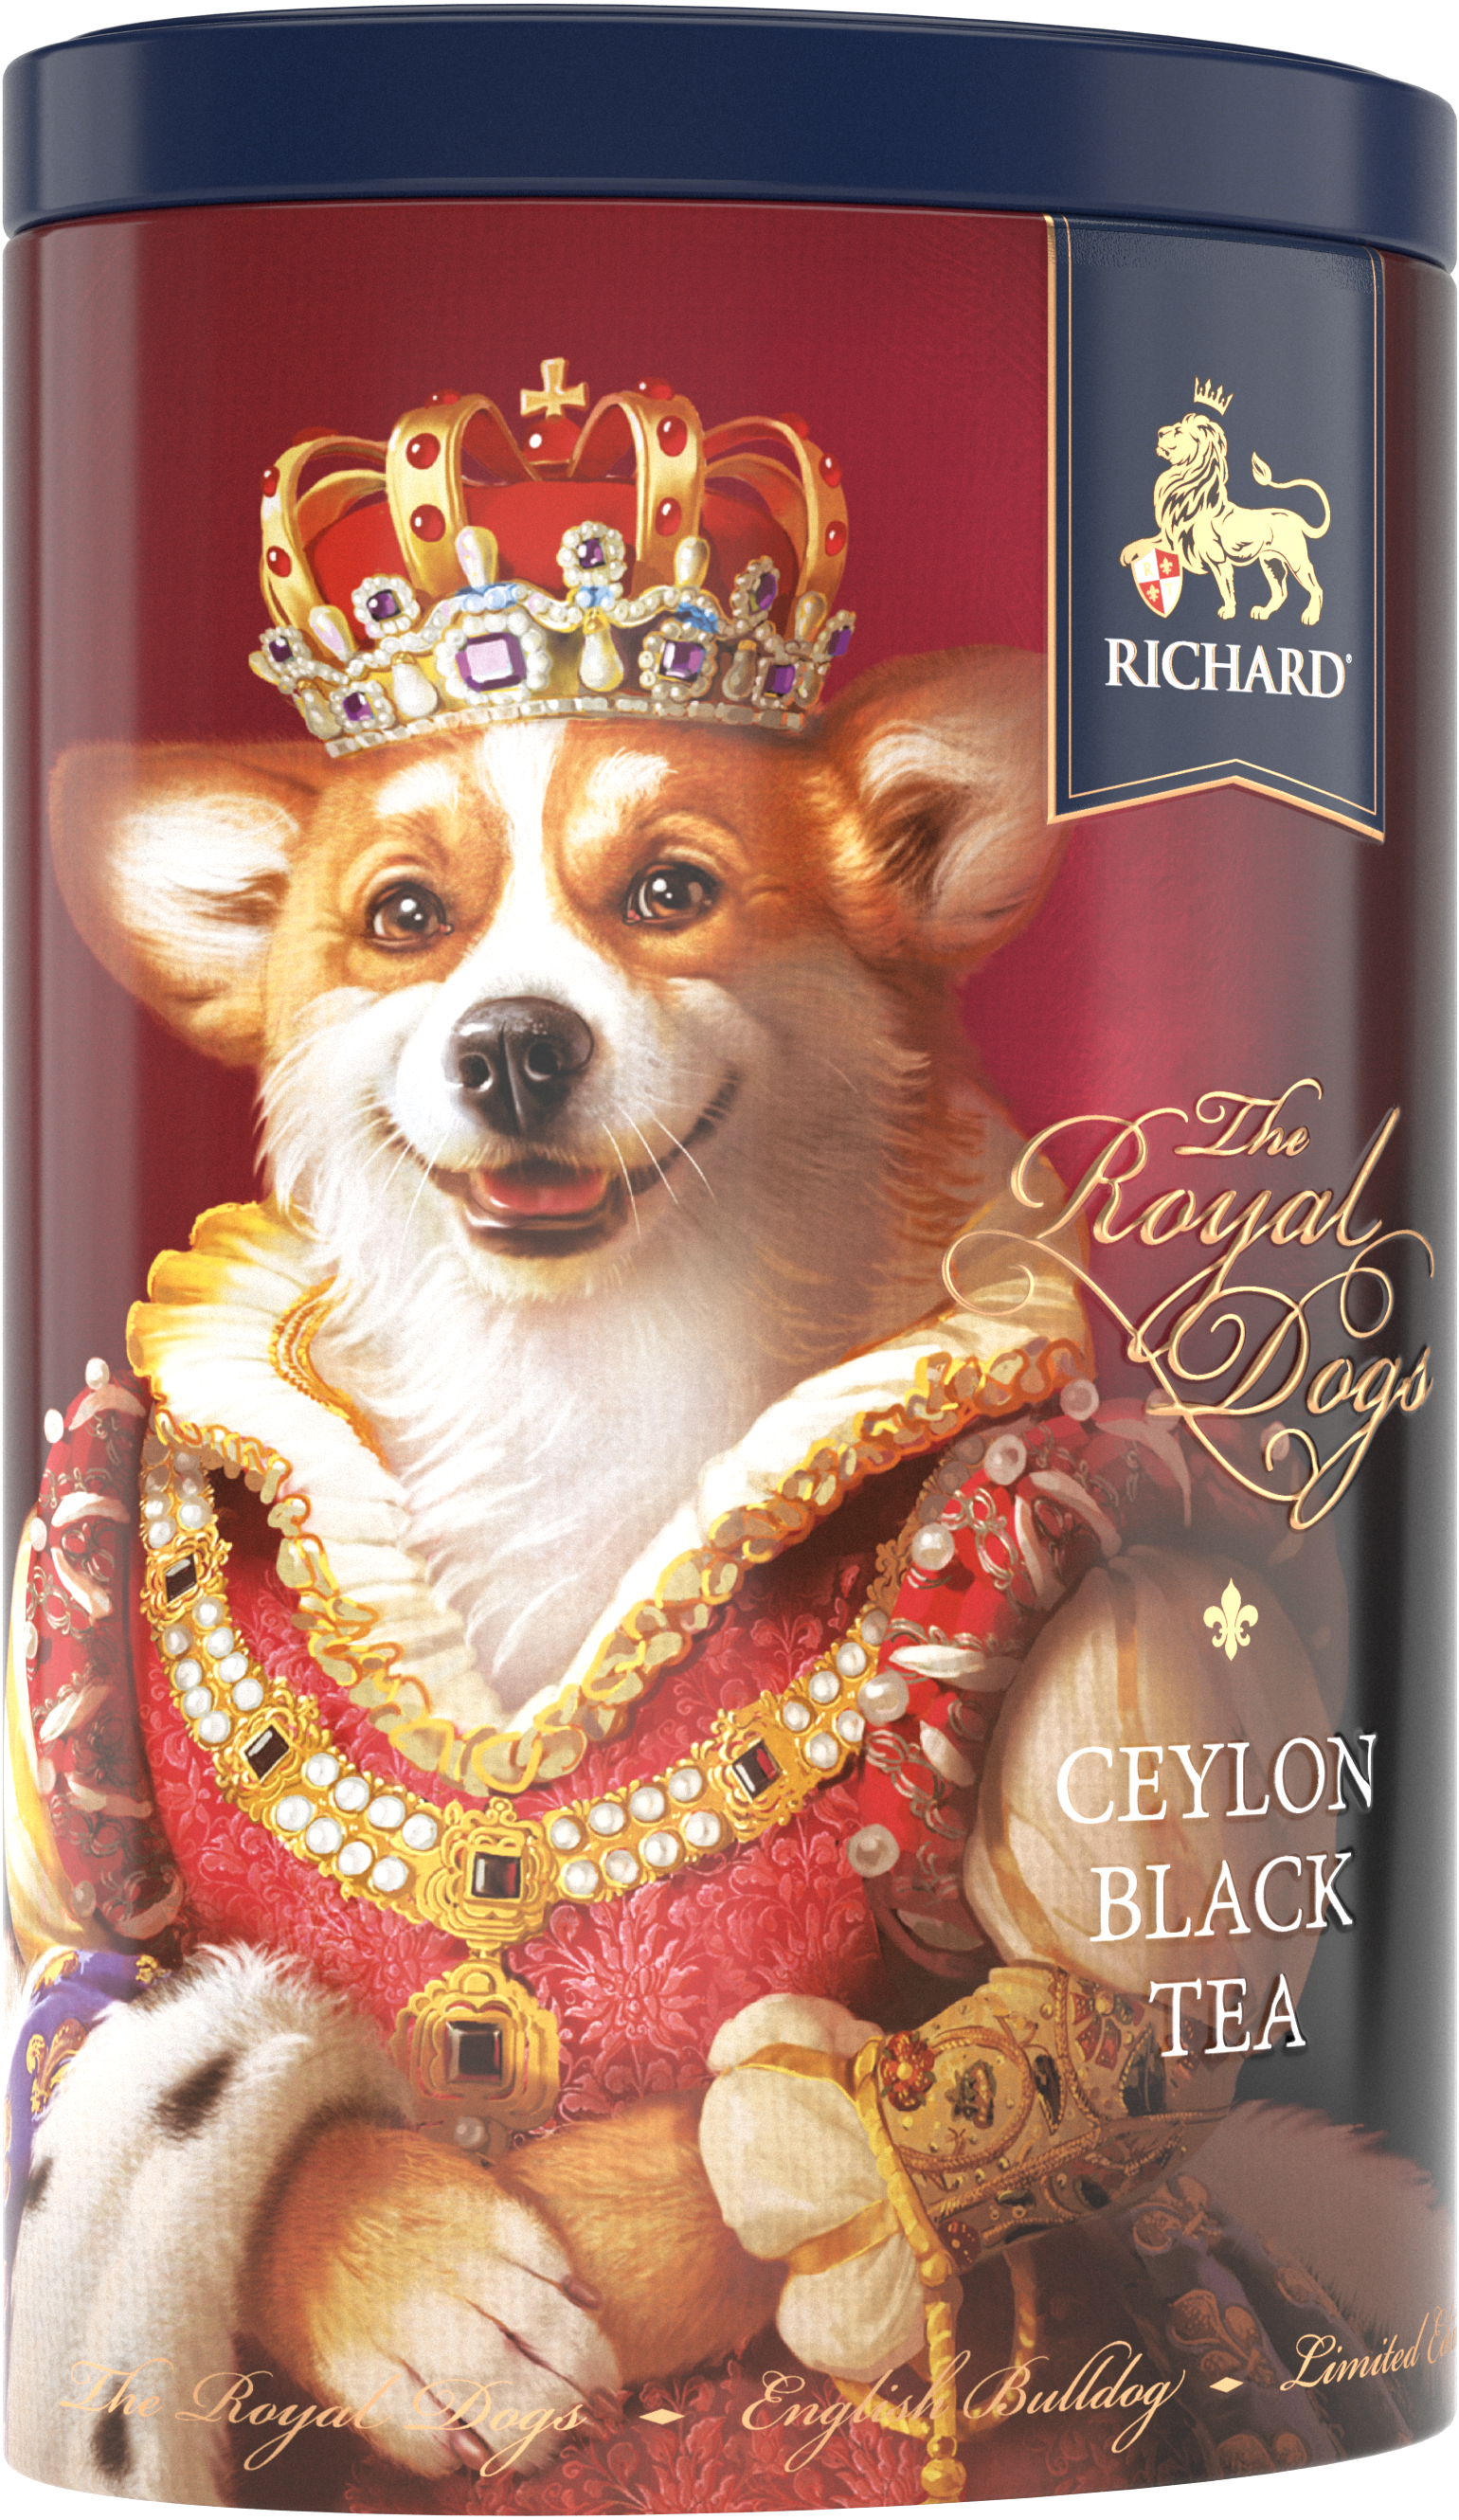 Richard Royal Kutyák, fekete tea, 34g, 20 piramis-filter, fémdoboz, Corgi - RichardTeavn - vásároljon a 2990.00 Ft